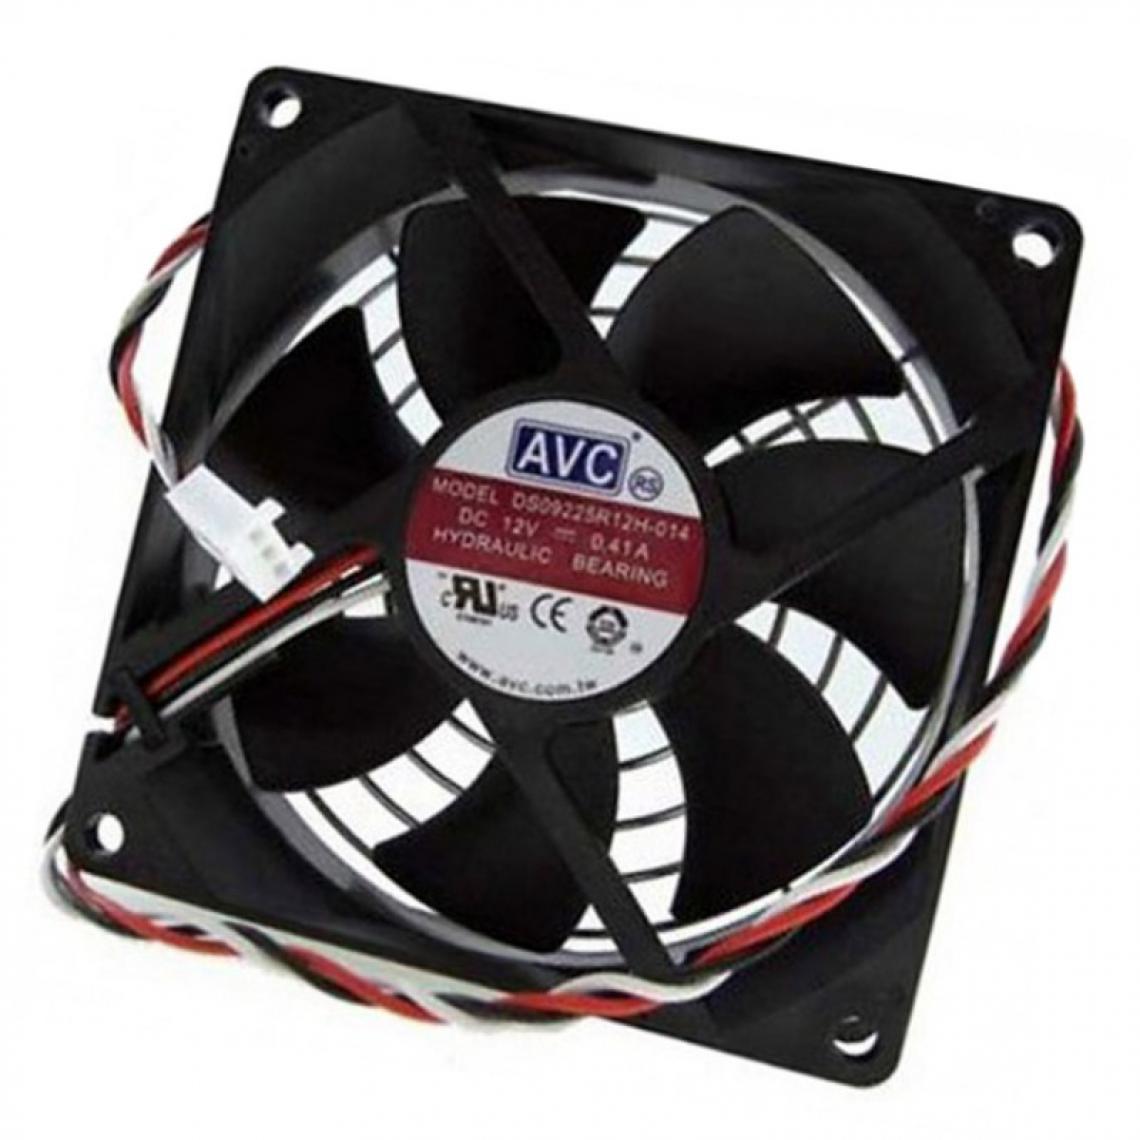 Avc - Ventilateur PC AVC DS09225R12H-014 92x92x25mm 12V 0.41A 3-Pin - Ventilateur Pour Boîtier